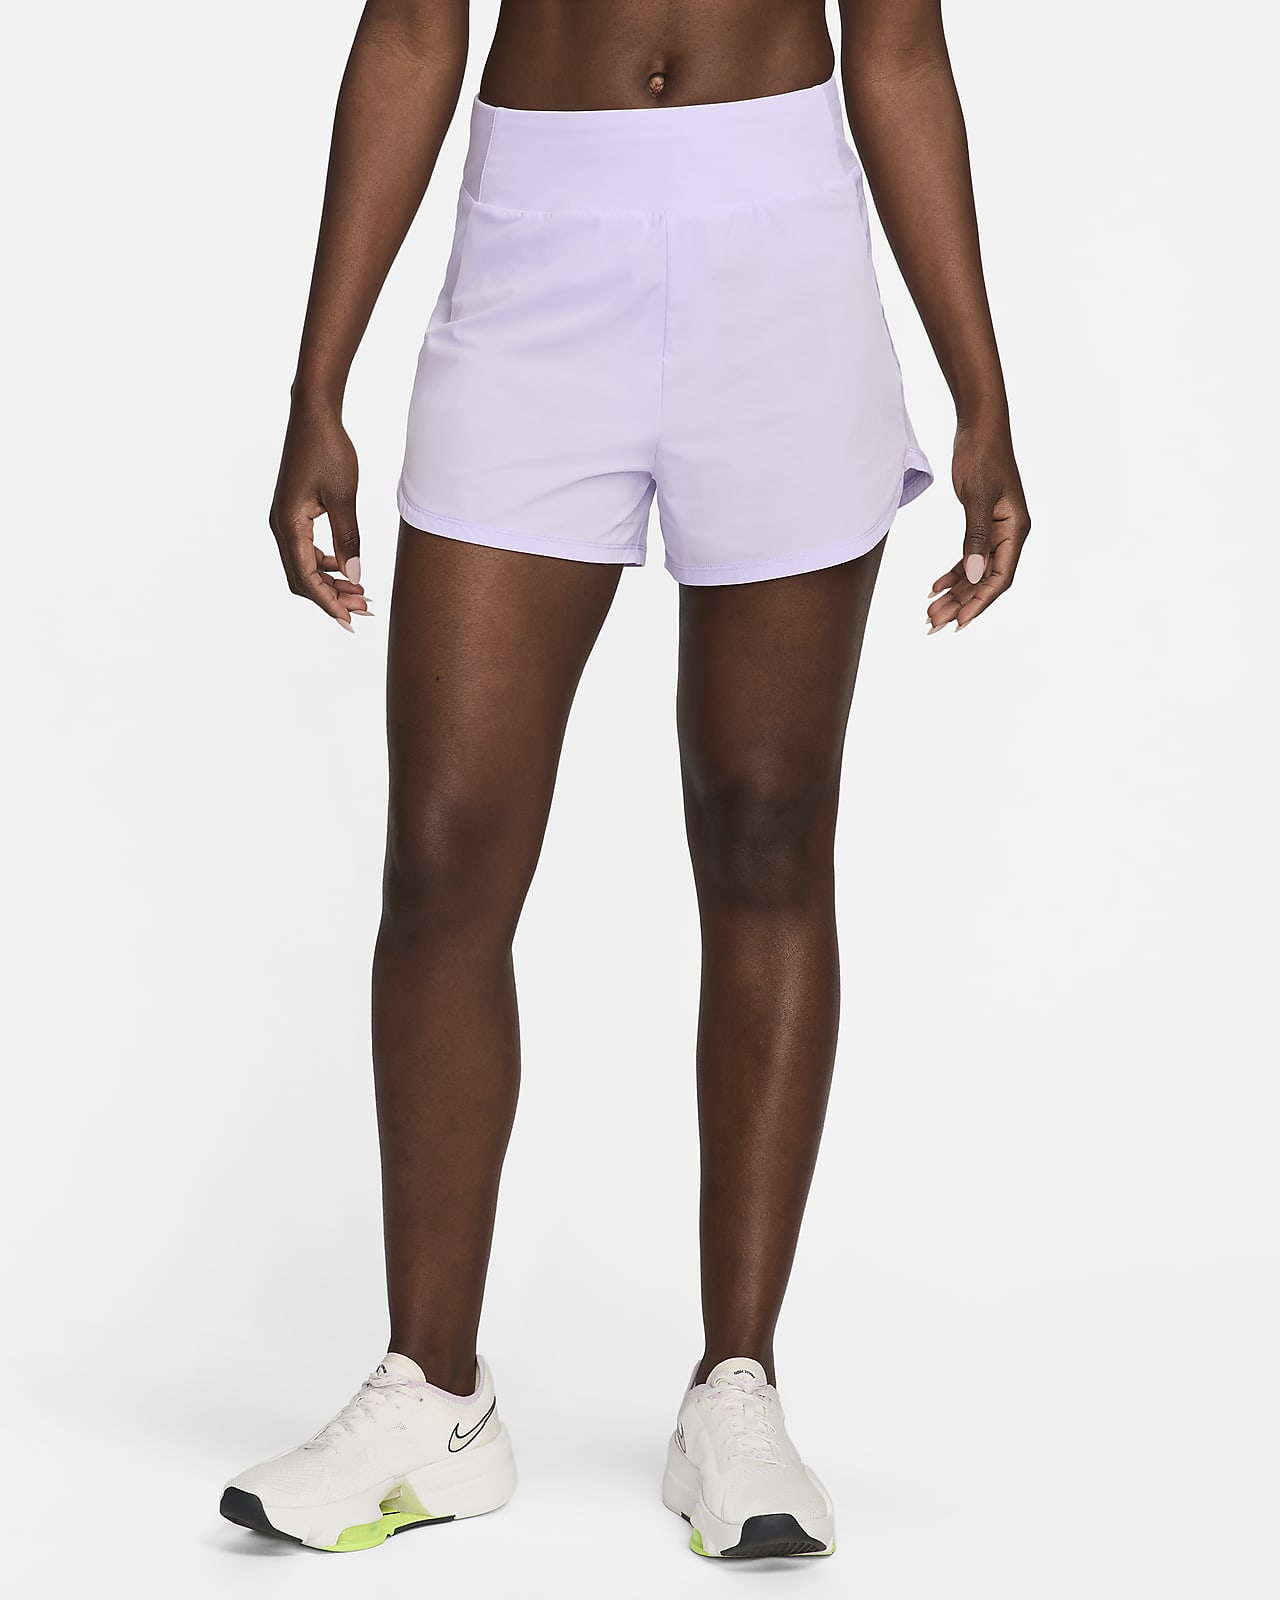 Nike Bliss Dri-FIT magas derekú, 8 cm-es, belső rövidnadrággal bélelt női fitneszrövidnadrág